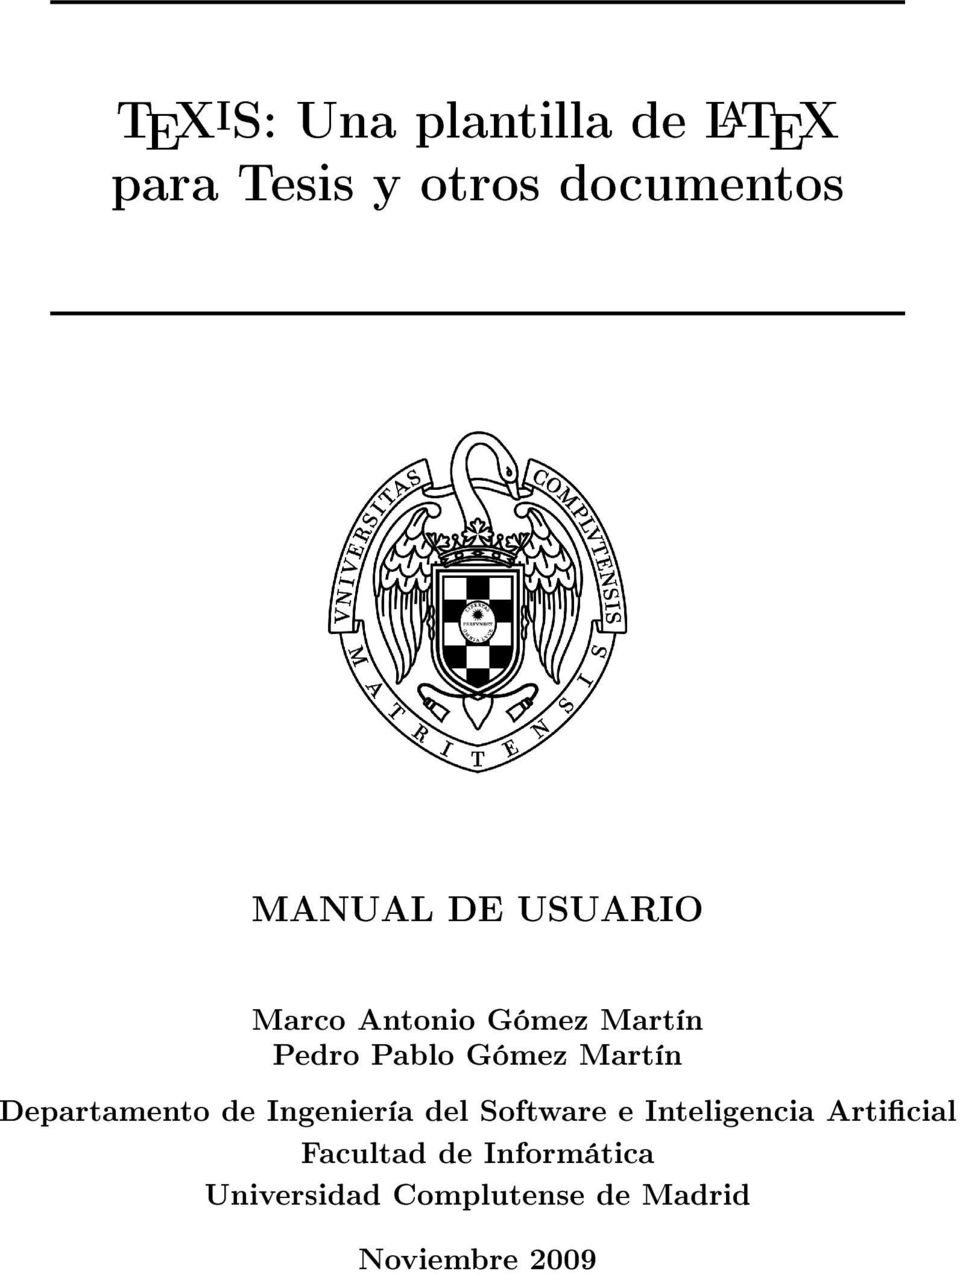 T E X i S: Una plantilla de L A T E X para Tesis y otros documentos - PDF  Descargar libre